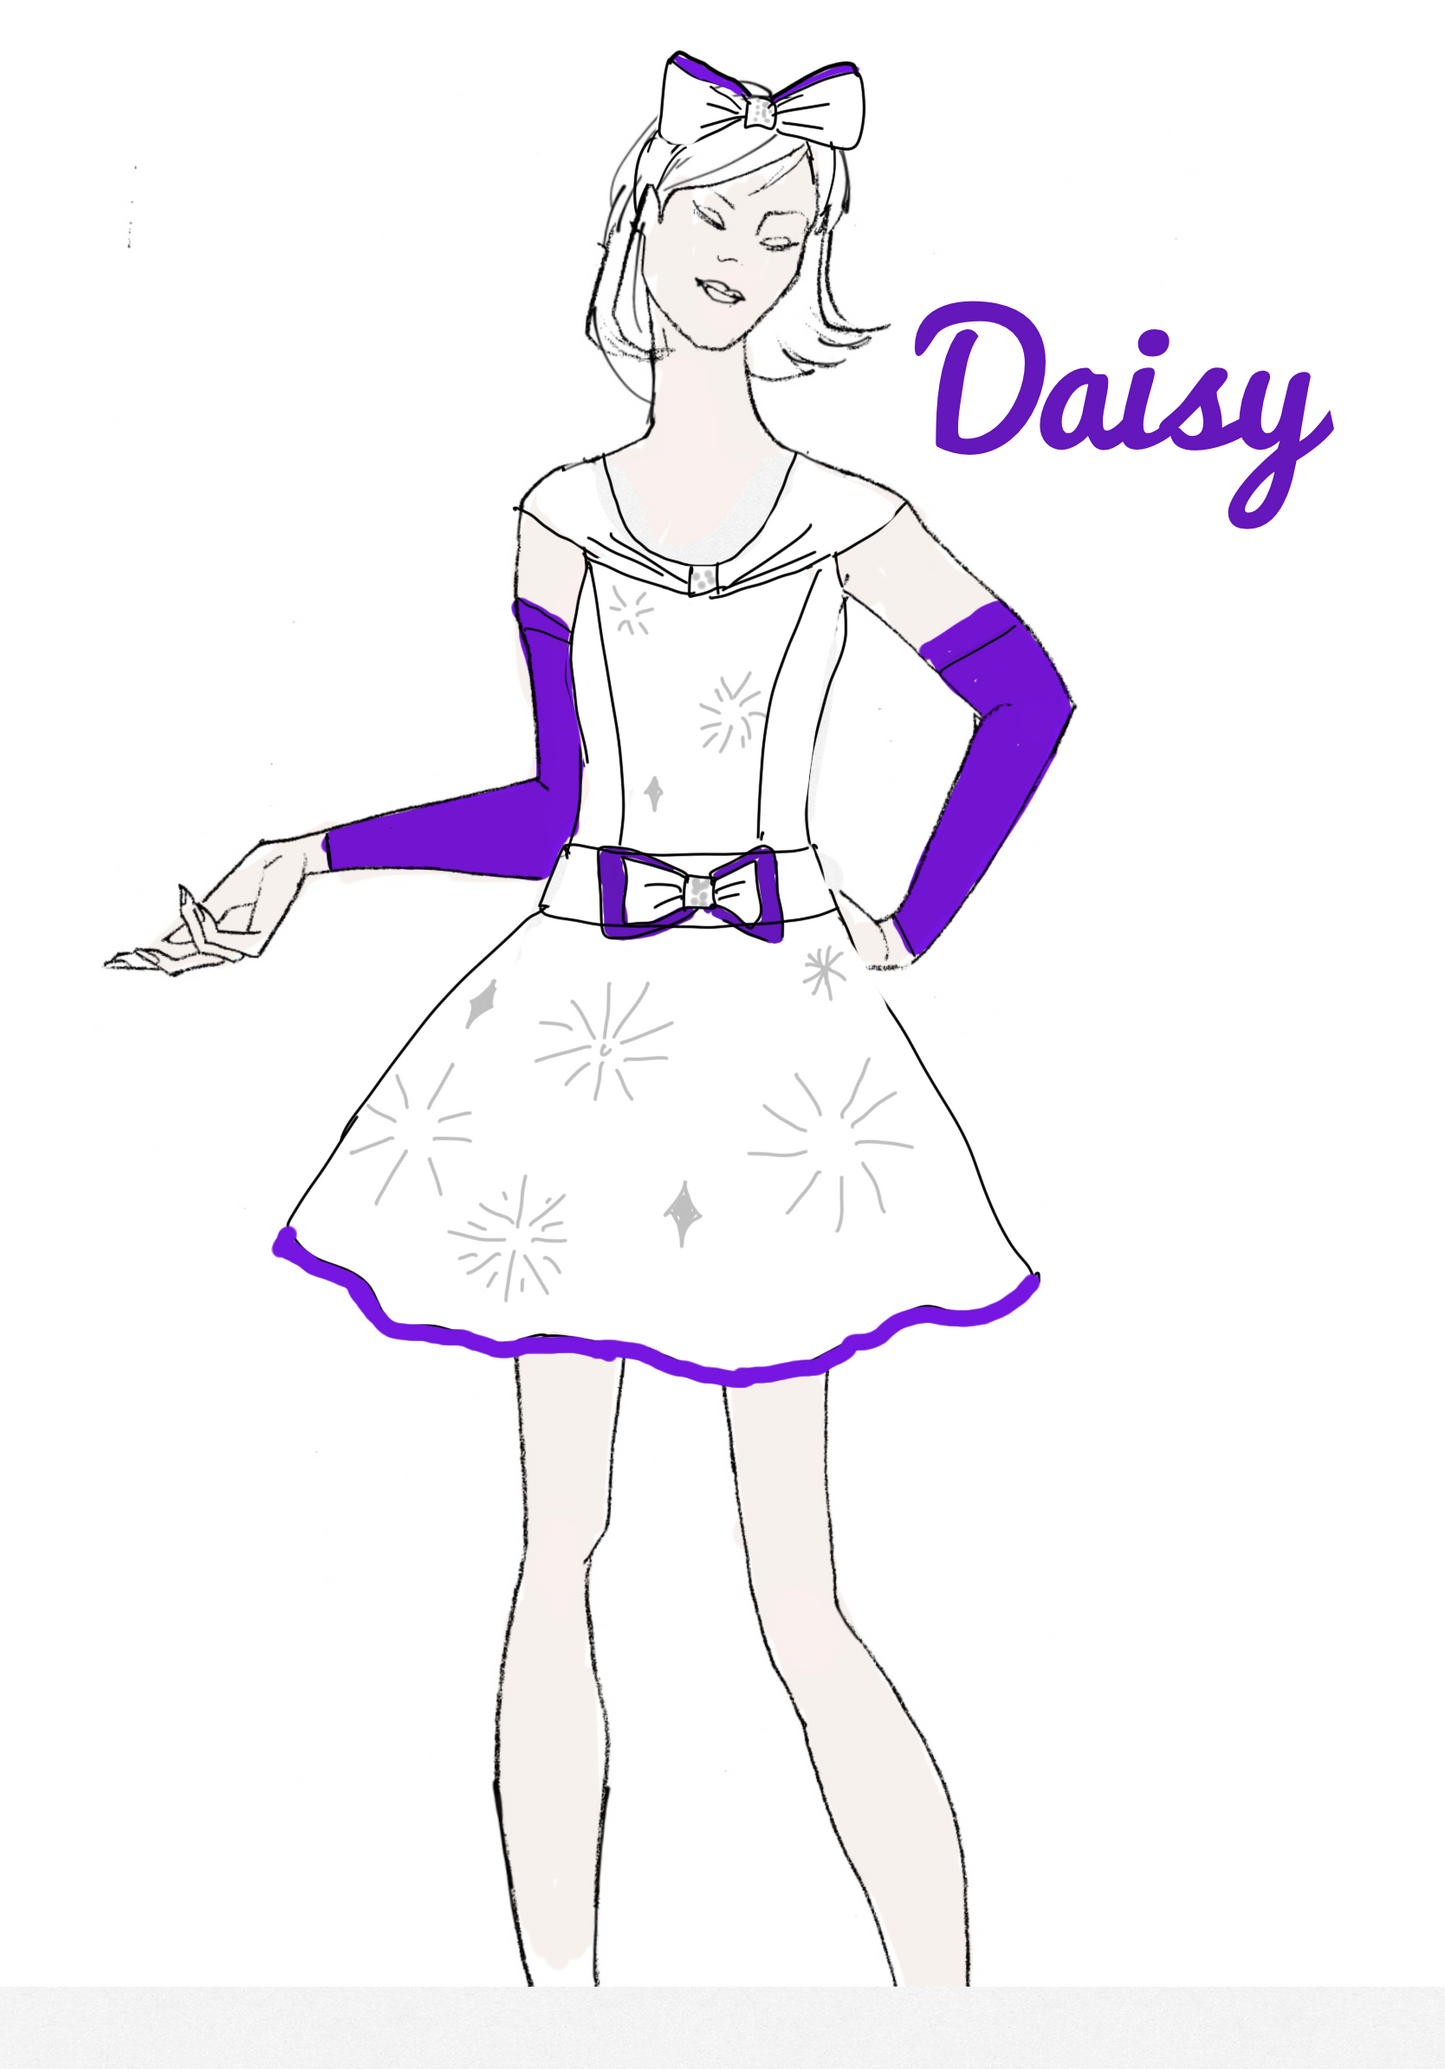 Daisy 100th celebration